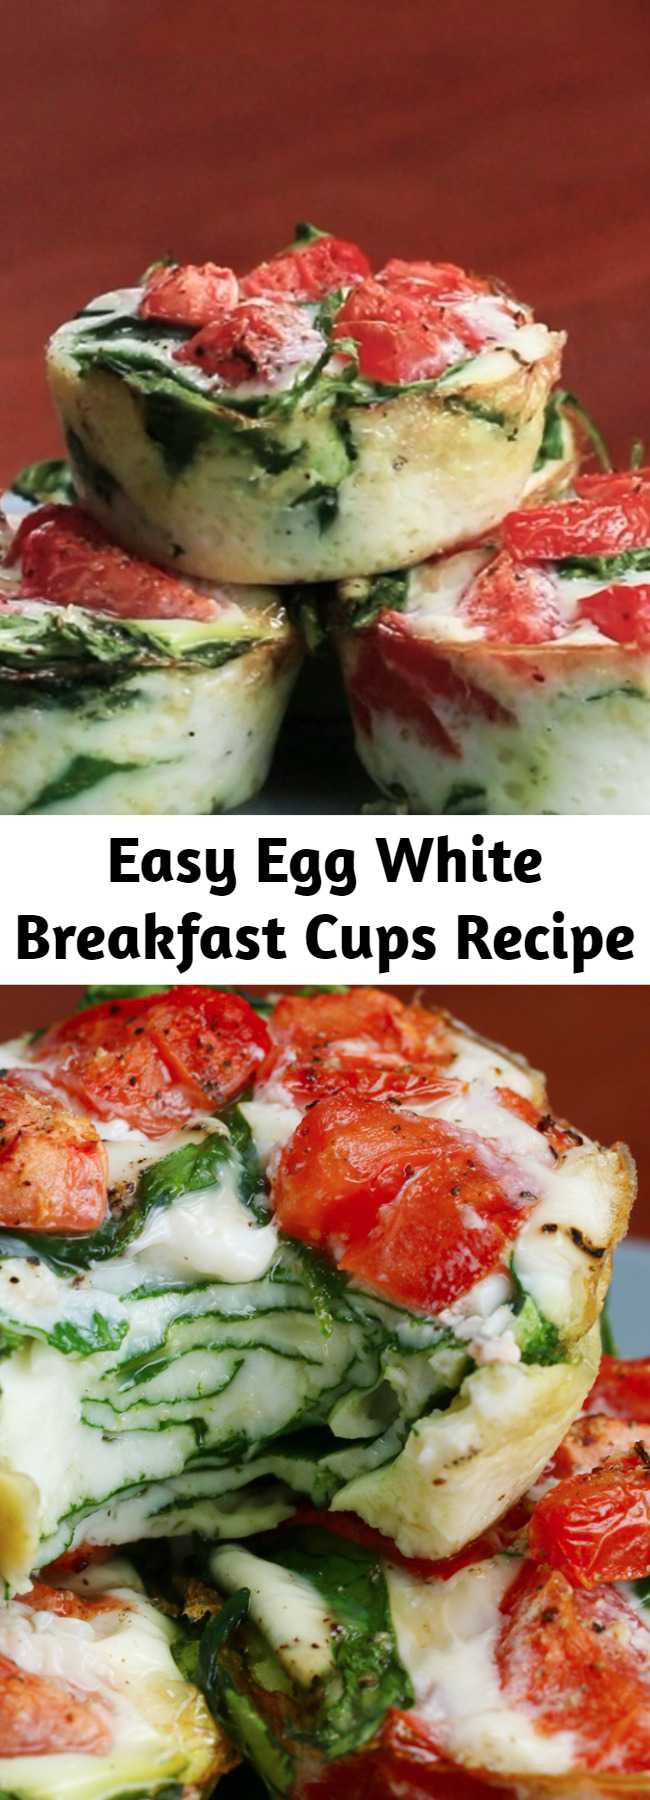 Easy Egg White Breakfast Cups Recipe